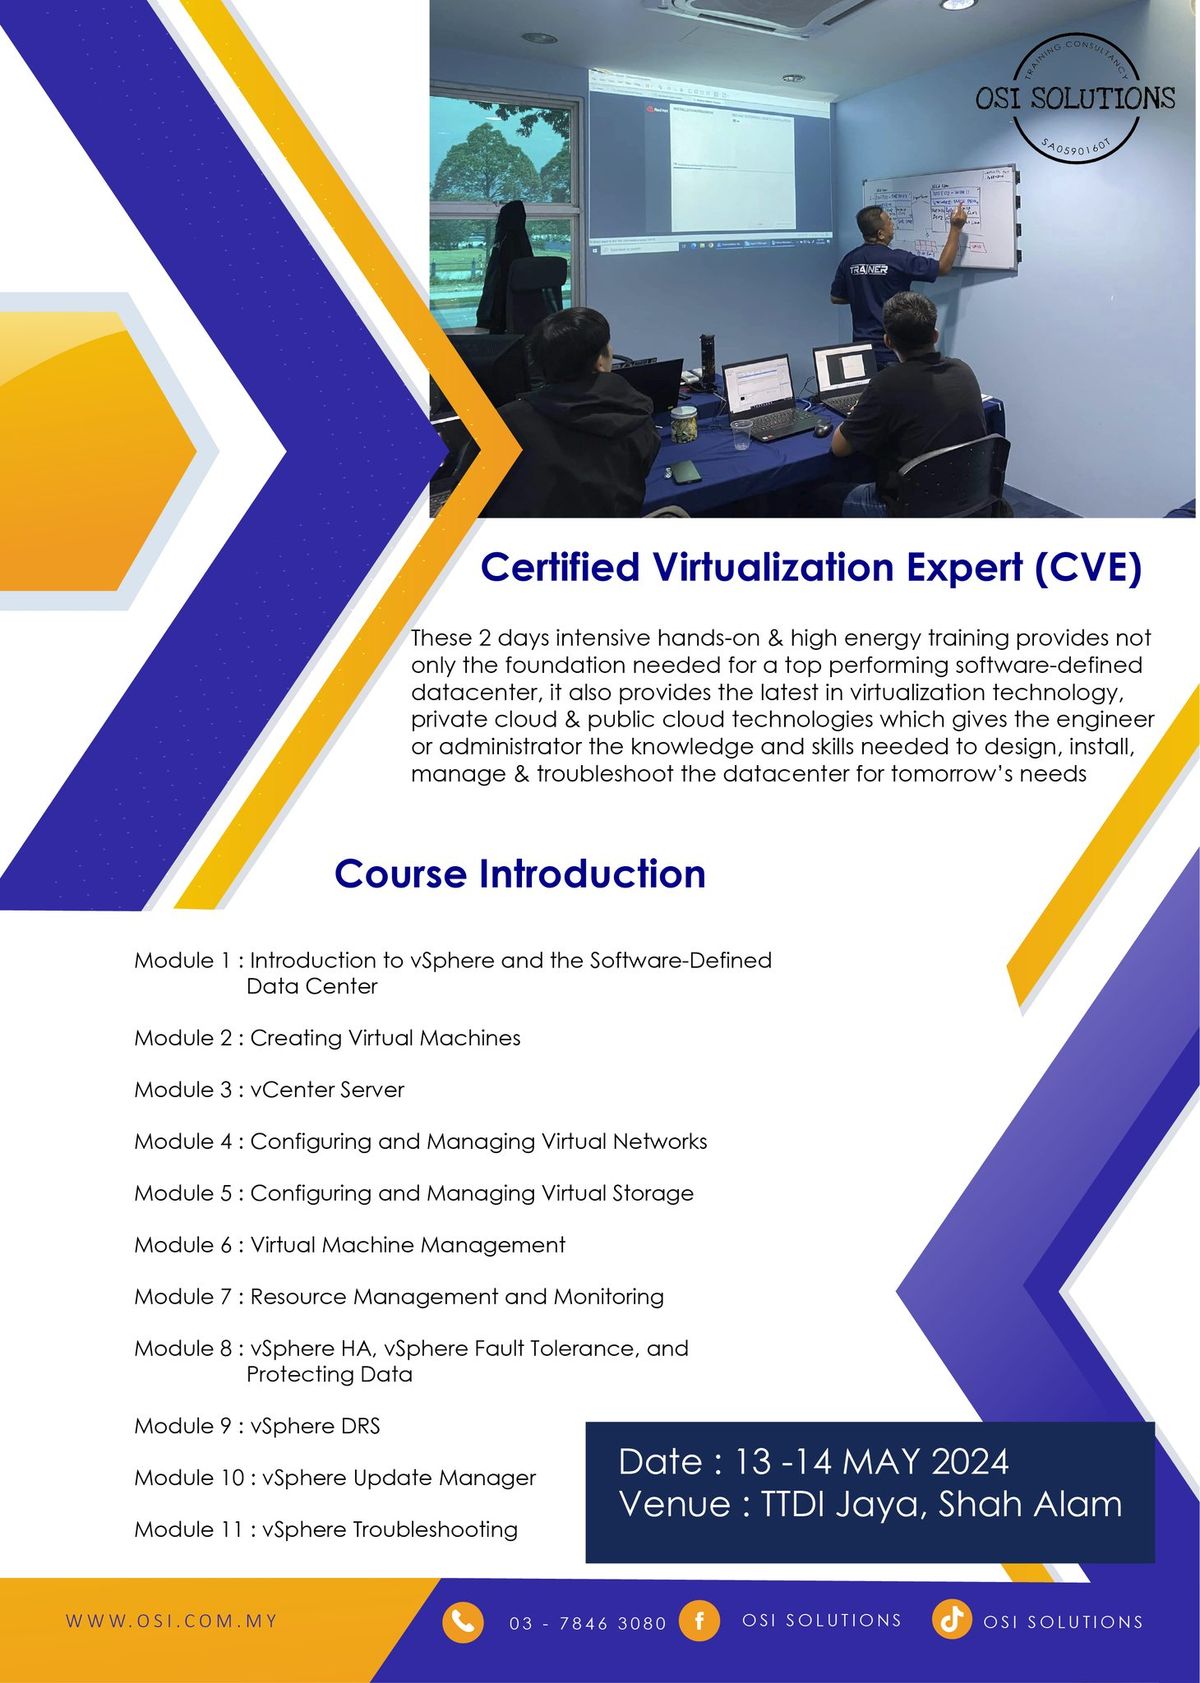 CERTIFIED VIRTUALIZATION EXPERT (CVE)